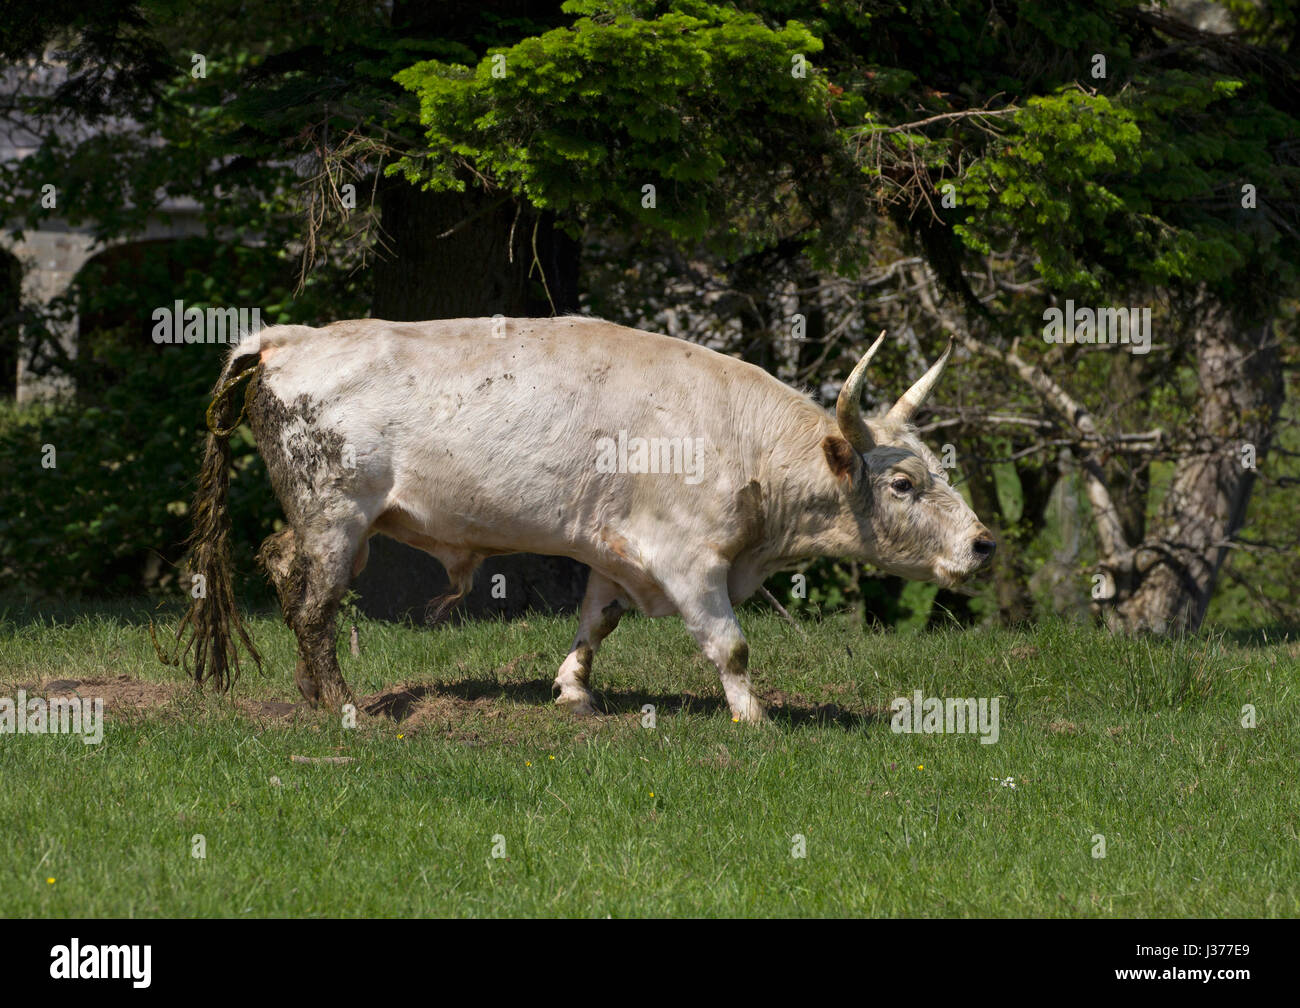 Blanc sauvage chillingham Cattle, seul mâle adulte balade dans un parc. Offres et demandes de chillingham, Northumberland, Angleterre. Banque D'Images